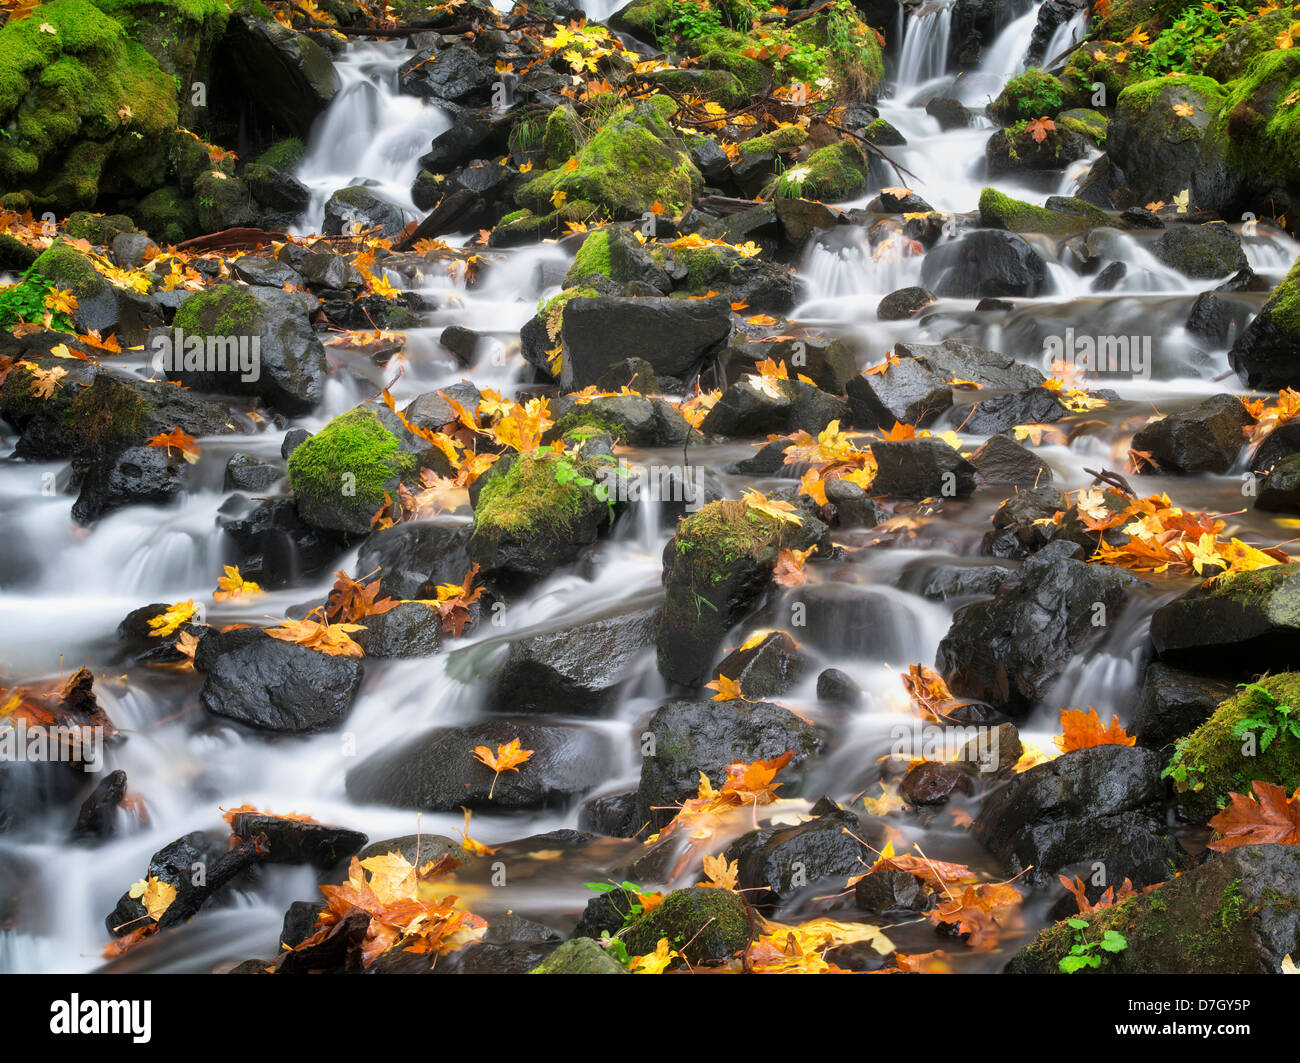 La famine Creek avec couleurs d'automne.Columbia River Gorge National Scenic Area, New York Banque D'Images